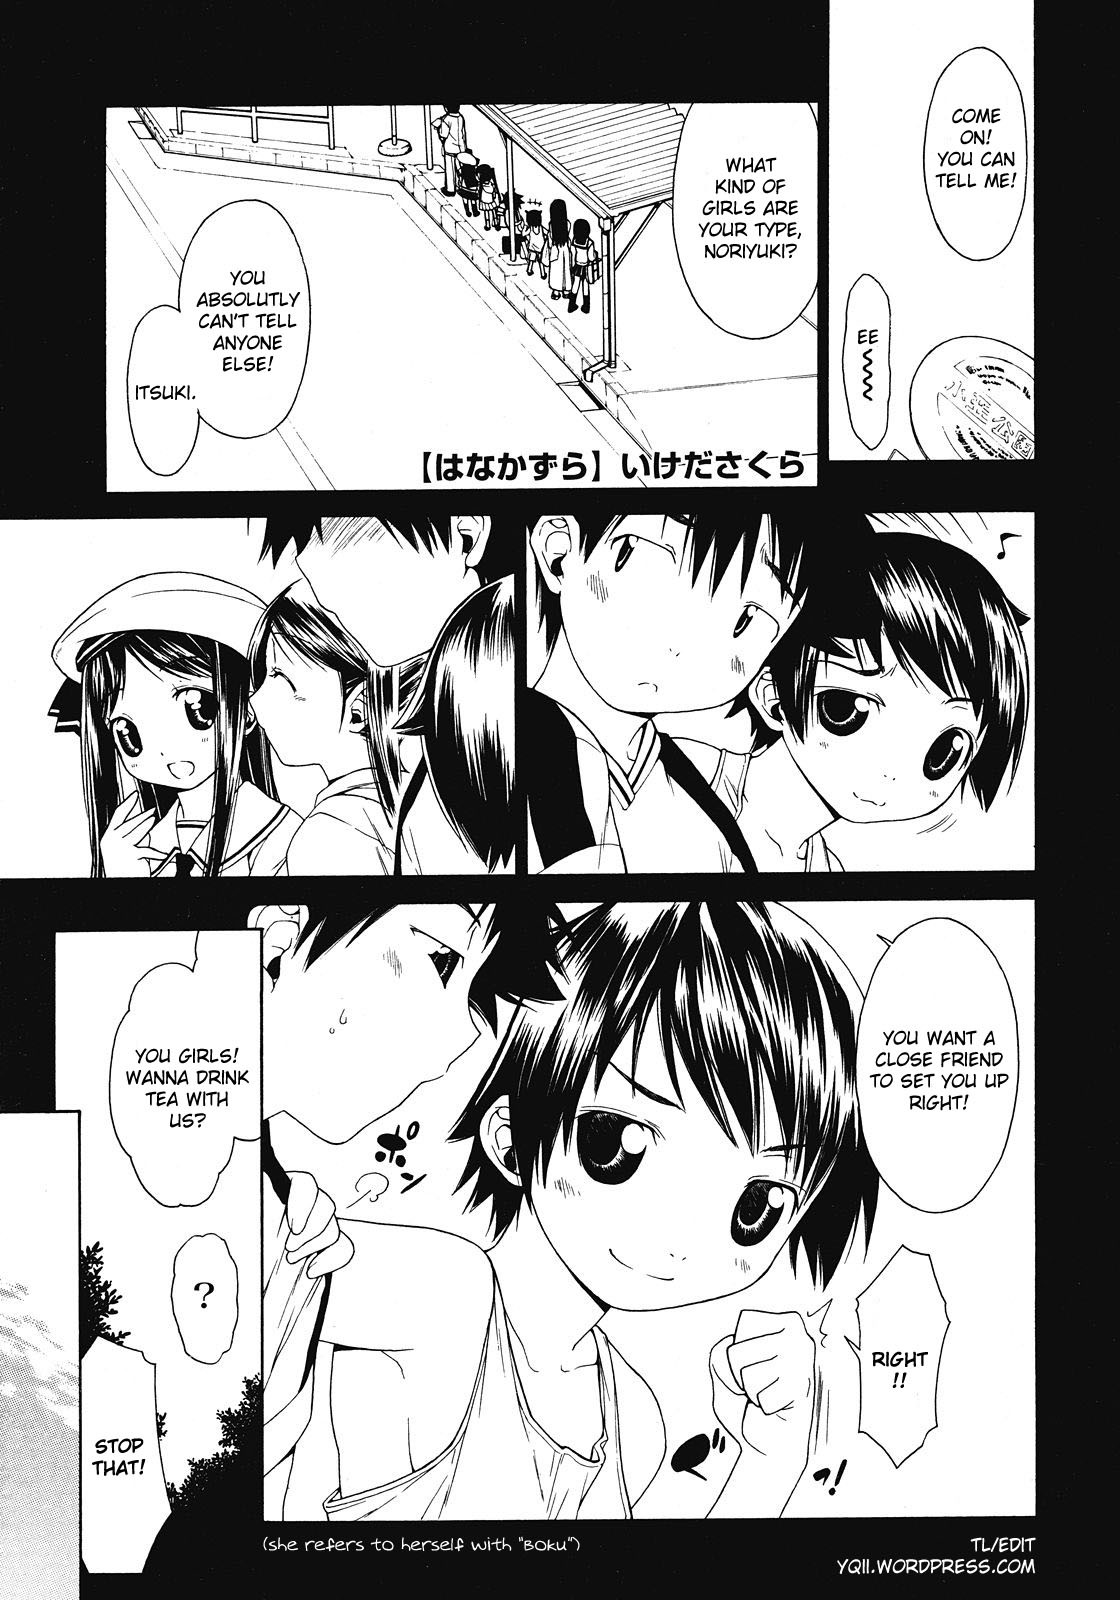 Hanakazura hentai manga